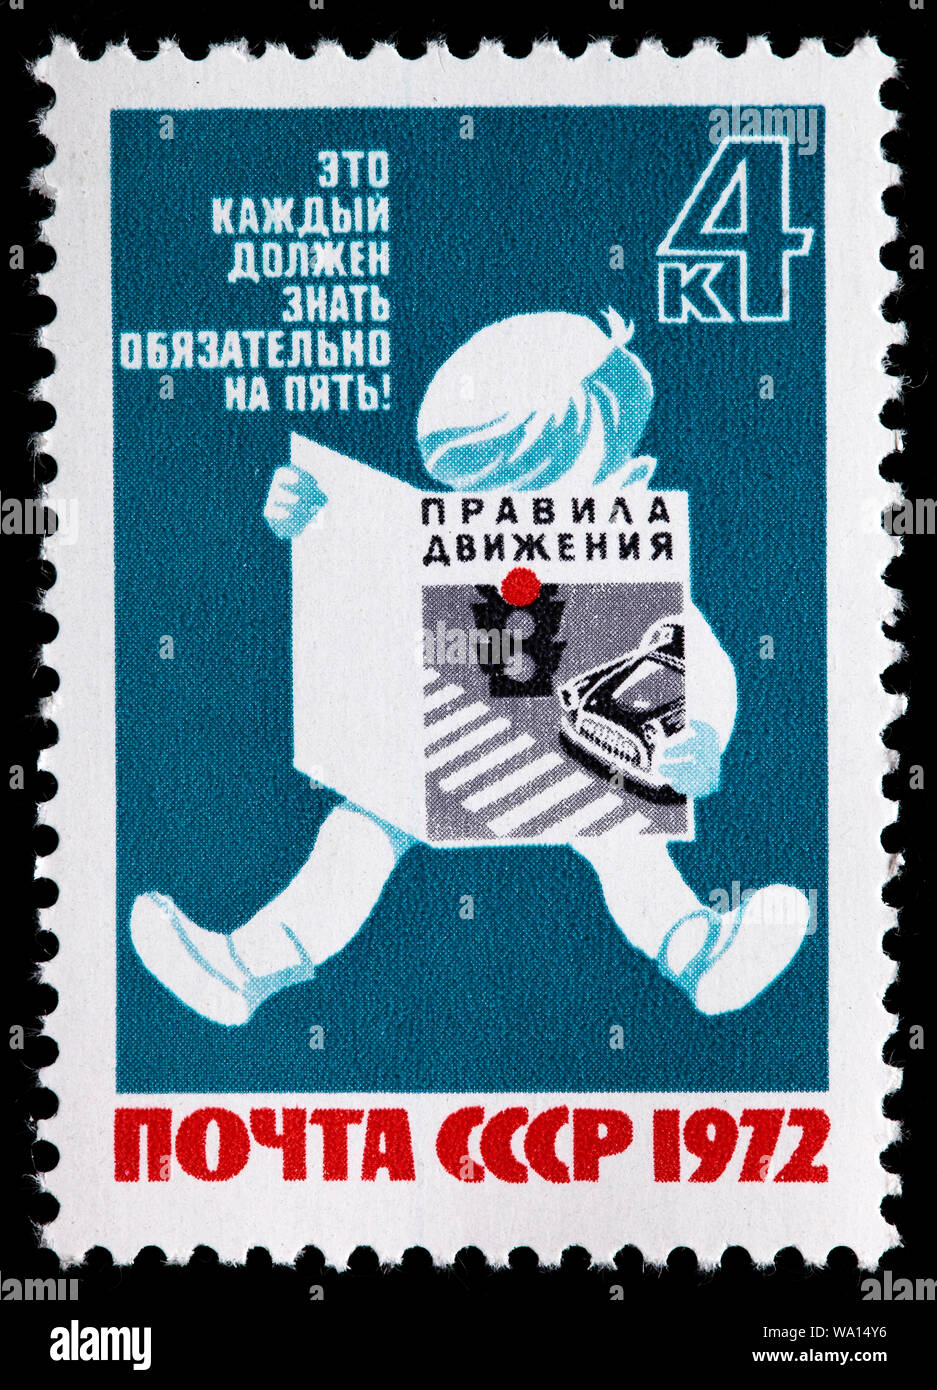 Sécurité routière, timbre-poste, Russie, URSS, 1972 Banque D'Images